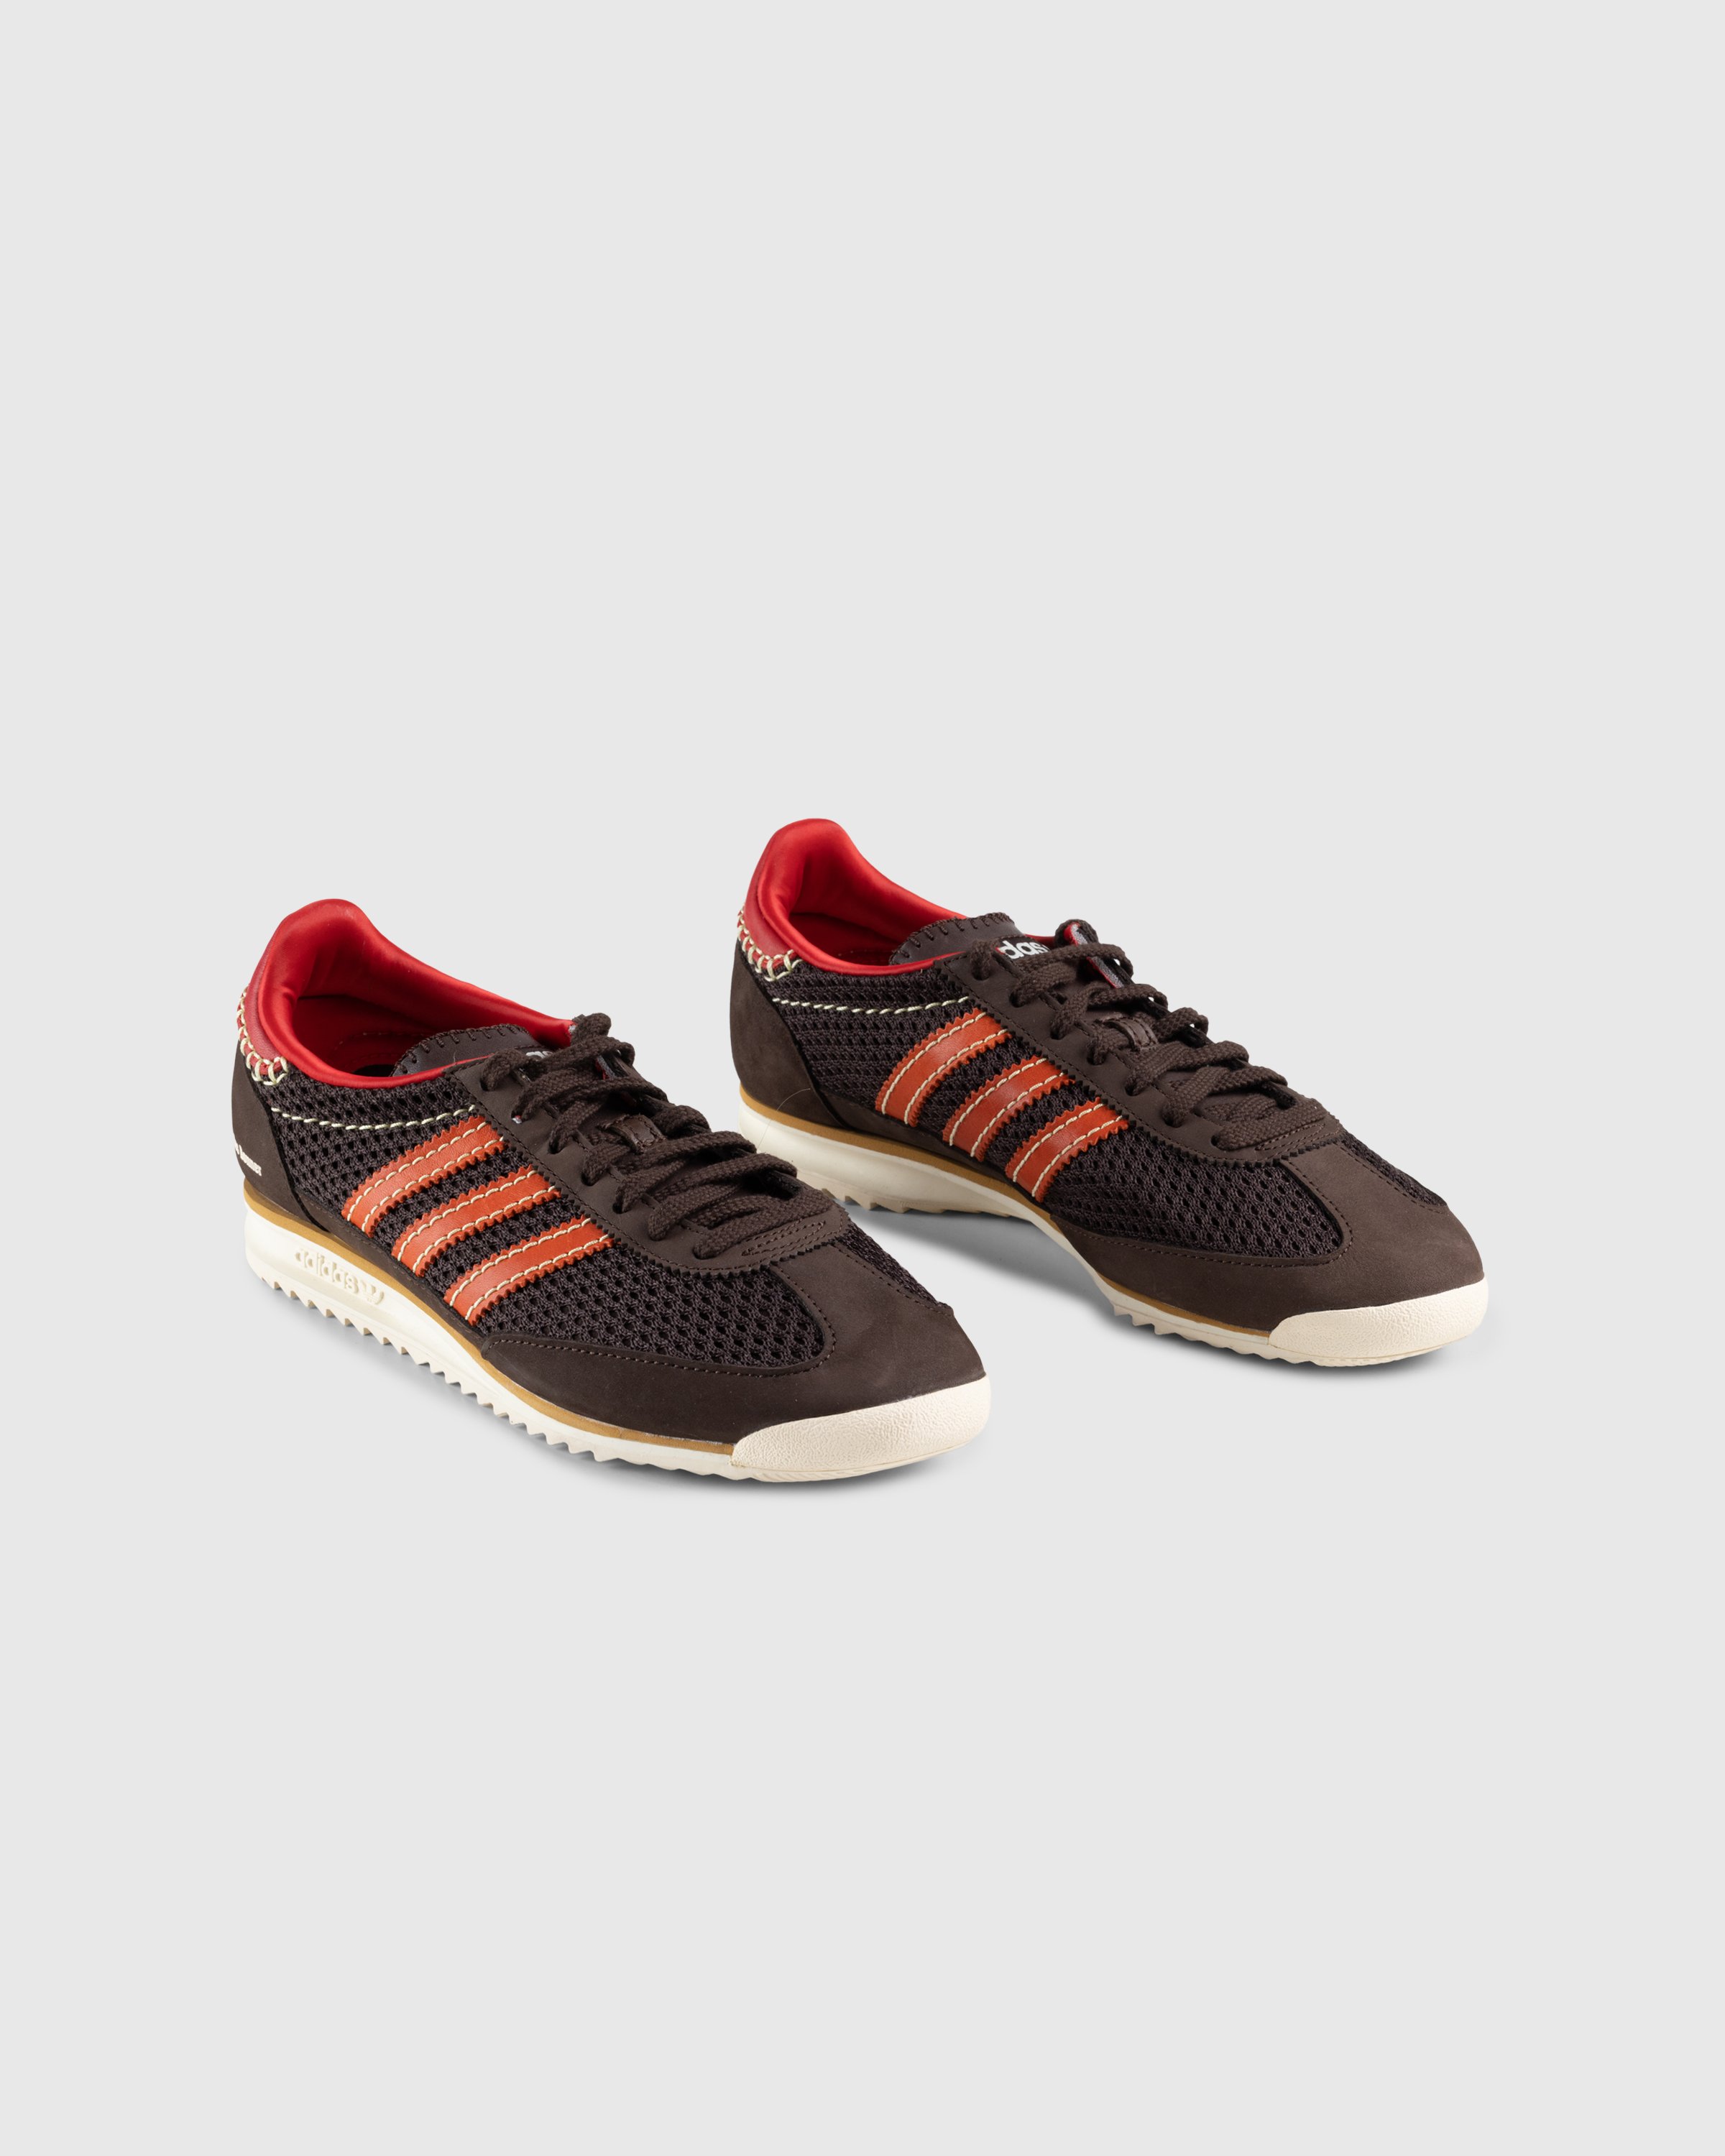 Adidas x Wales Bonner - SL72 Knit Dark Brown - Footwear - Brown - Image 3